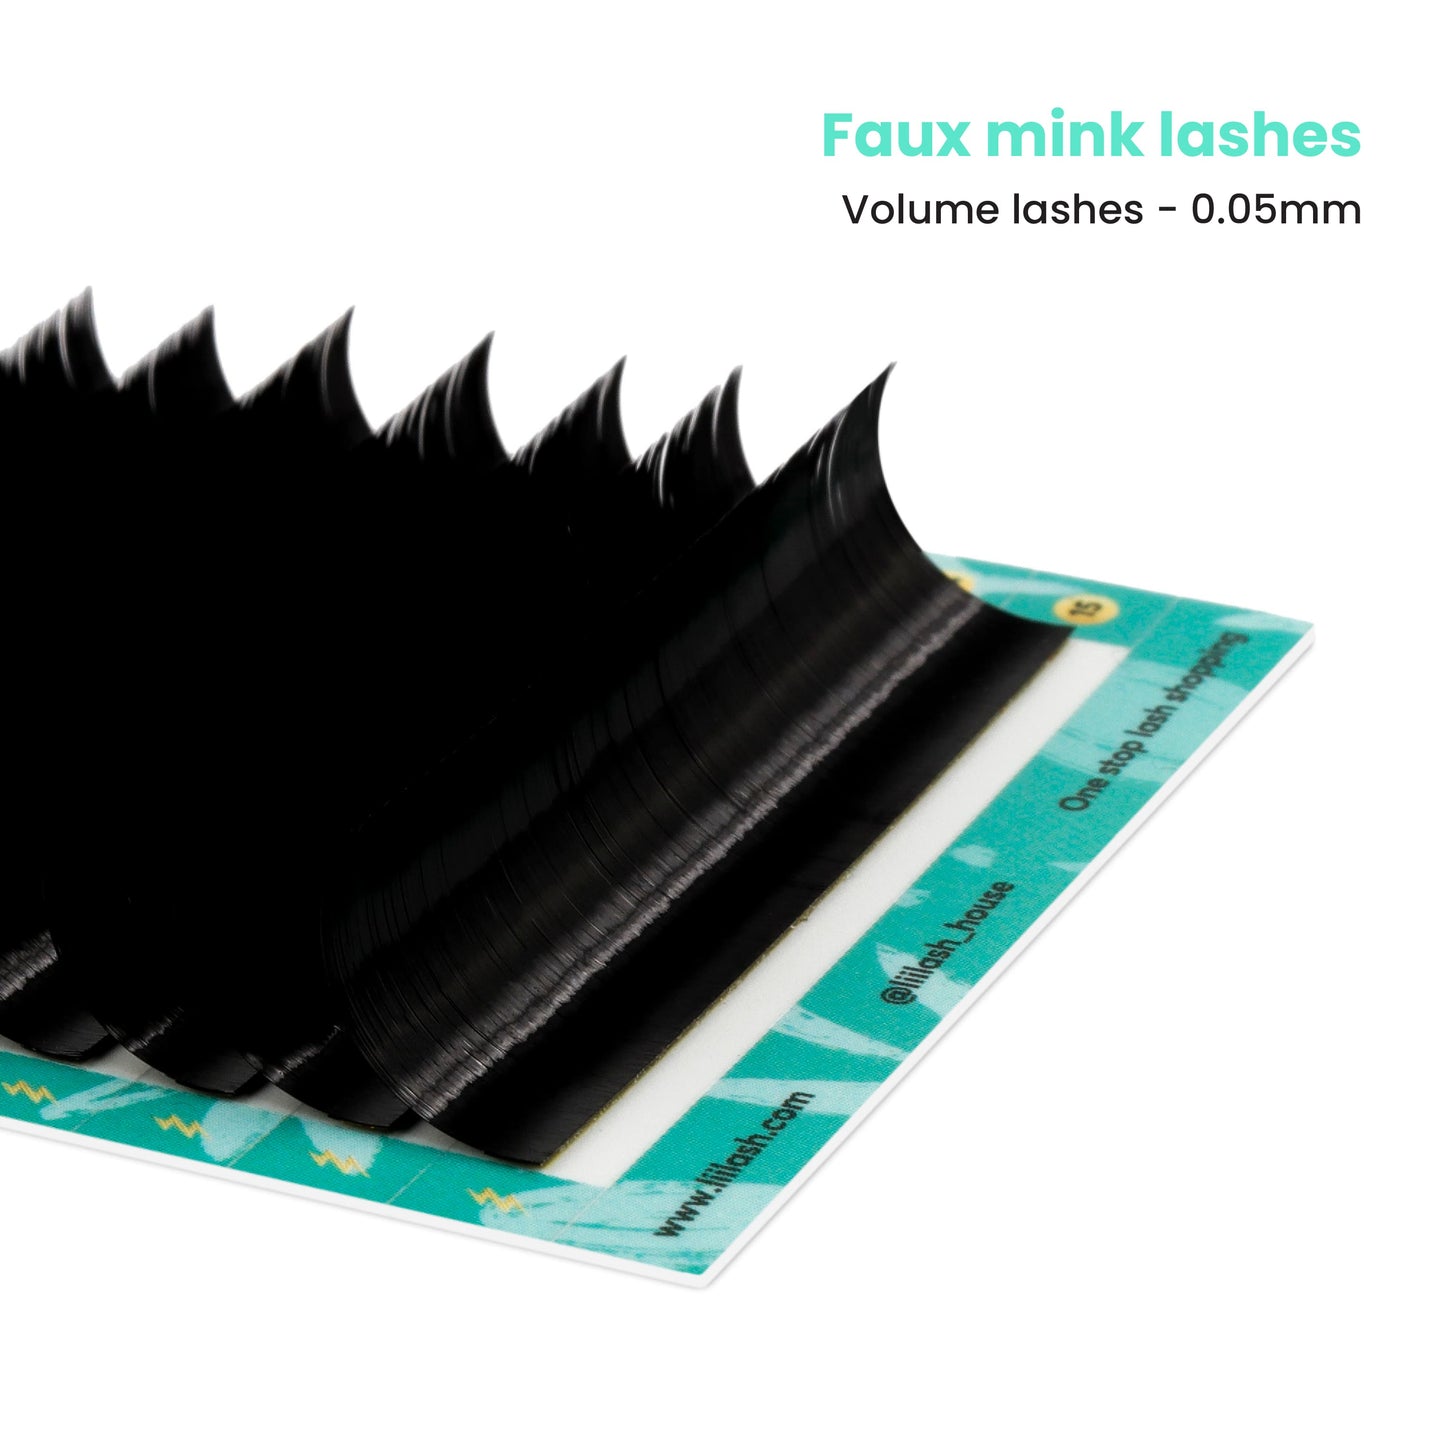 Faux Mink volume lashes 0.05mm